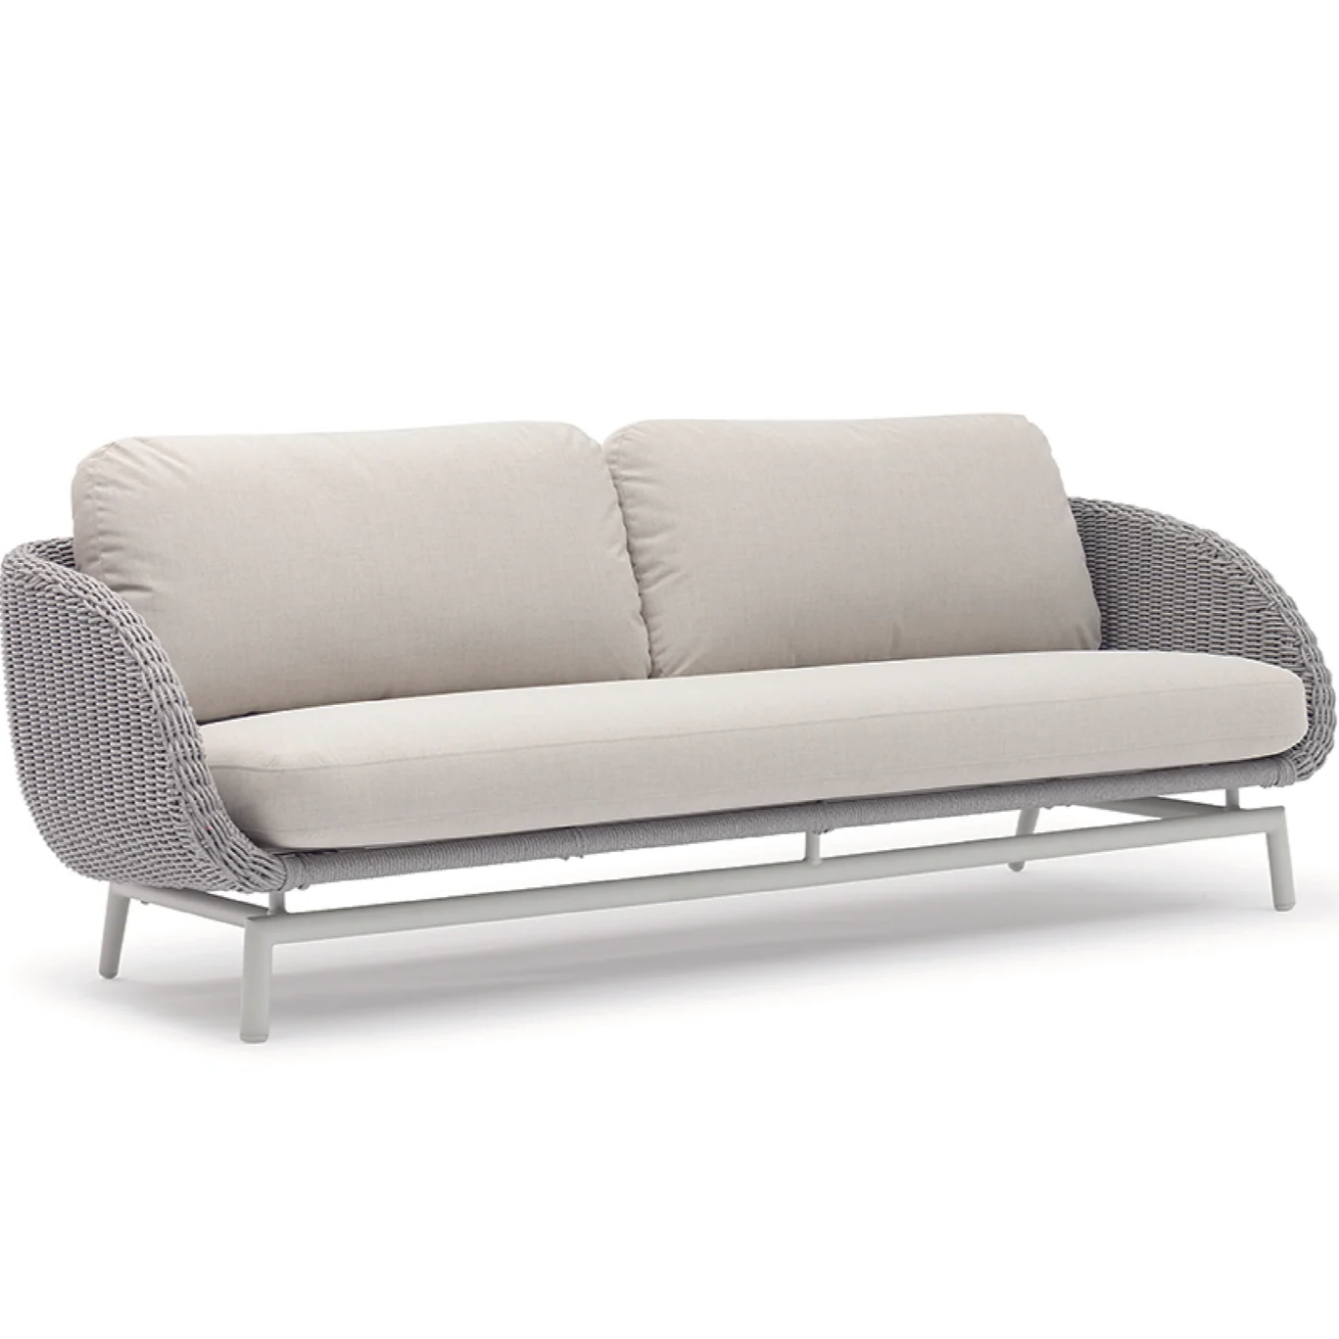 Scoop 3-Seater Sofa, Light Grey Aluminum, 80"W